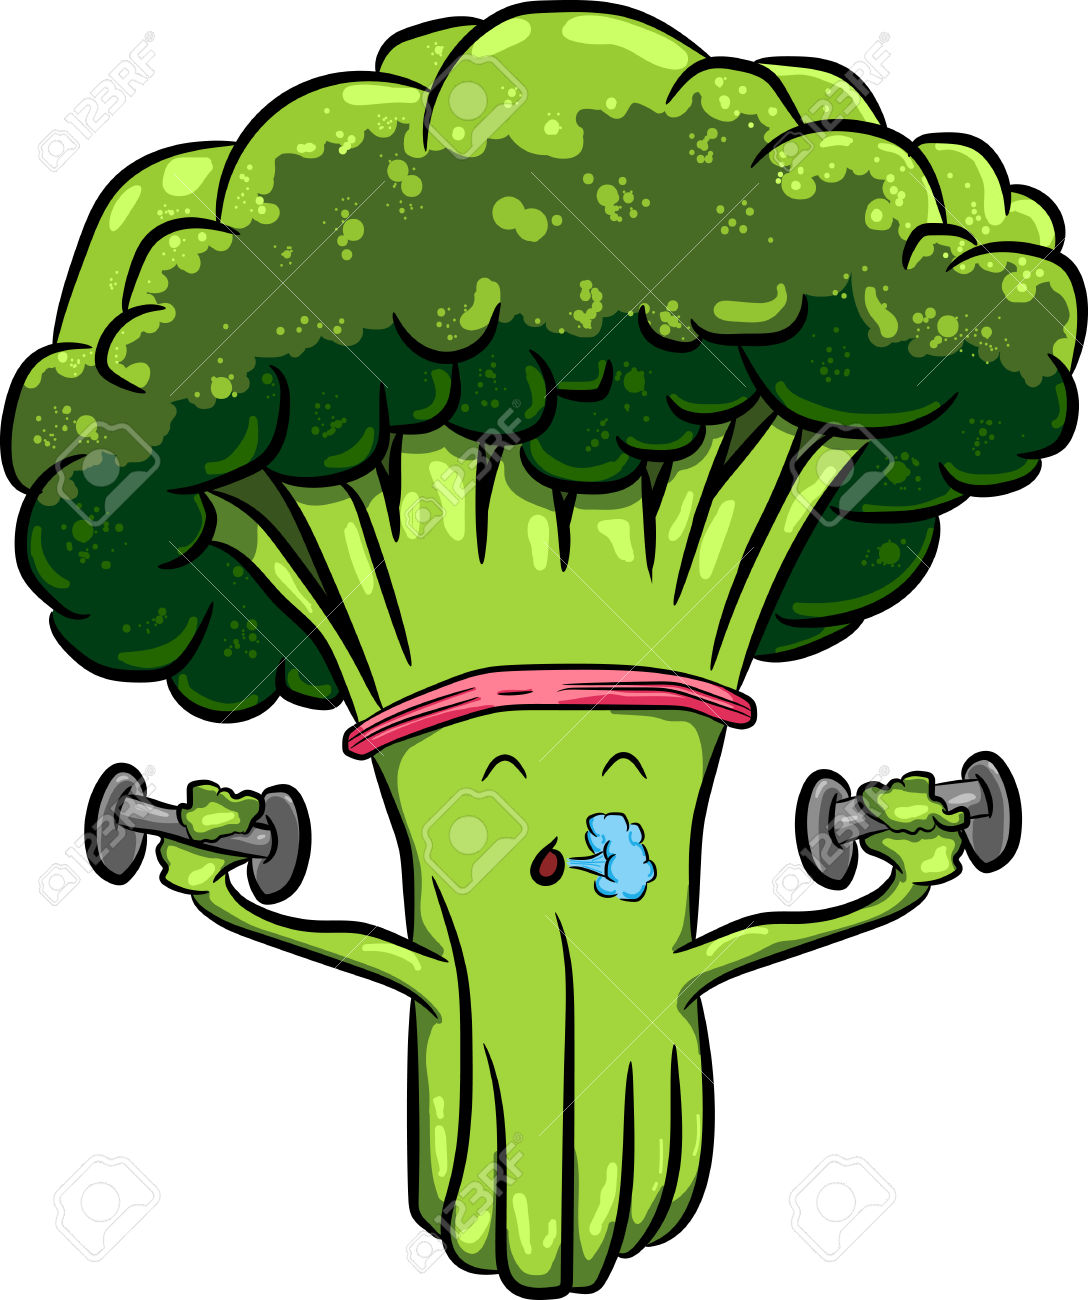 broccoli clipart comic